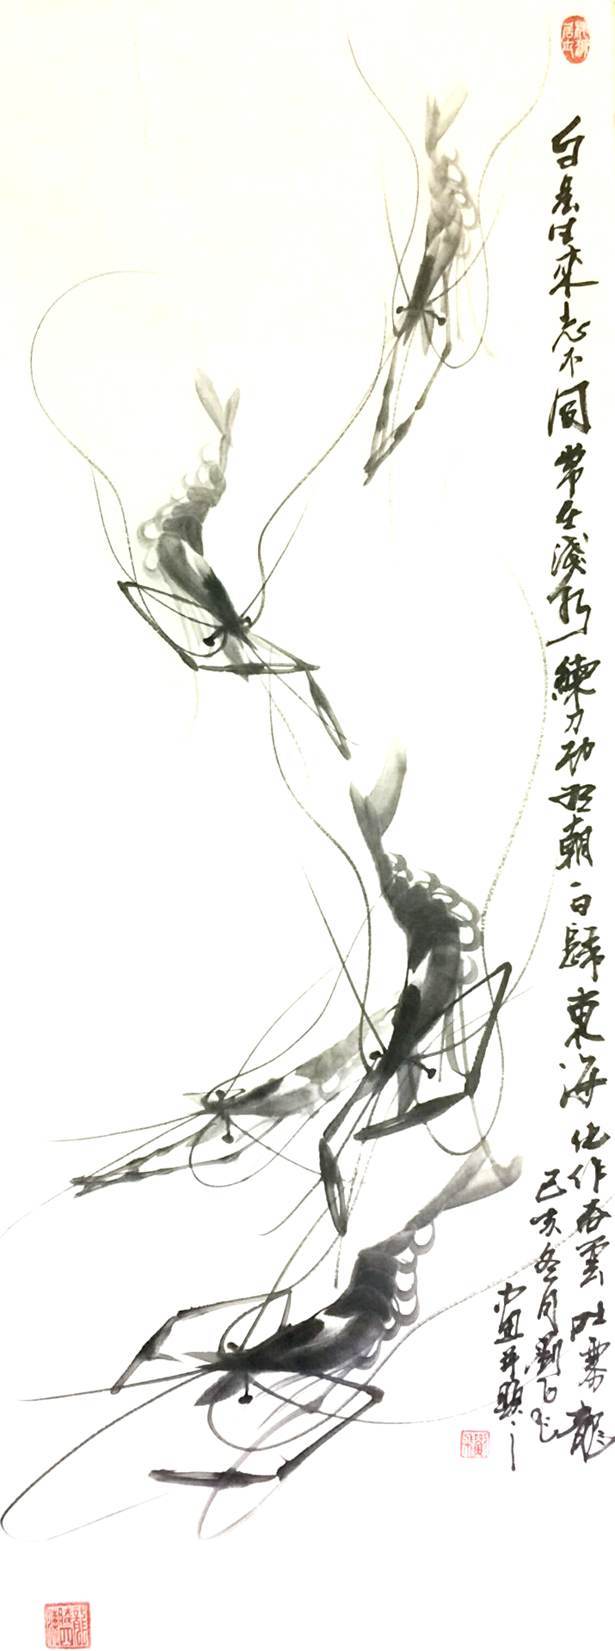 刘飞先生画虾独特艺术风格之鉴赏